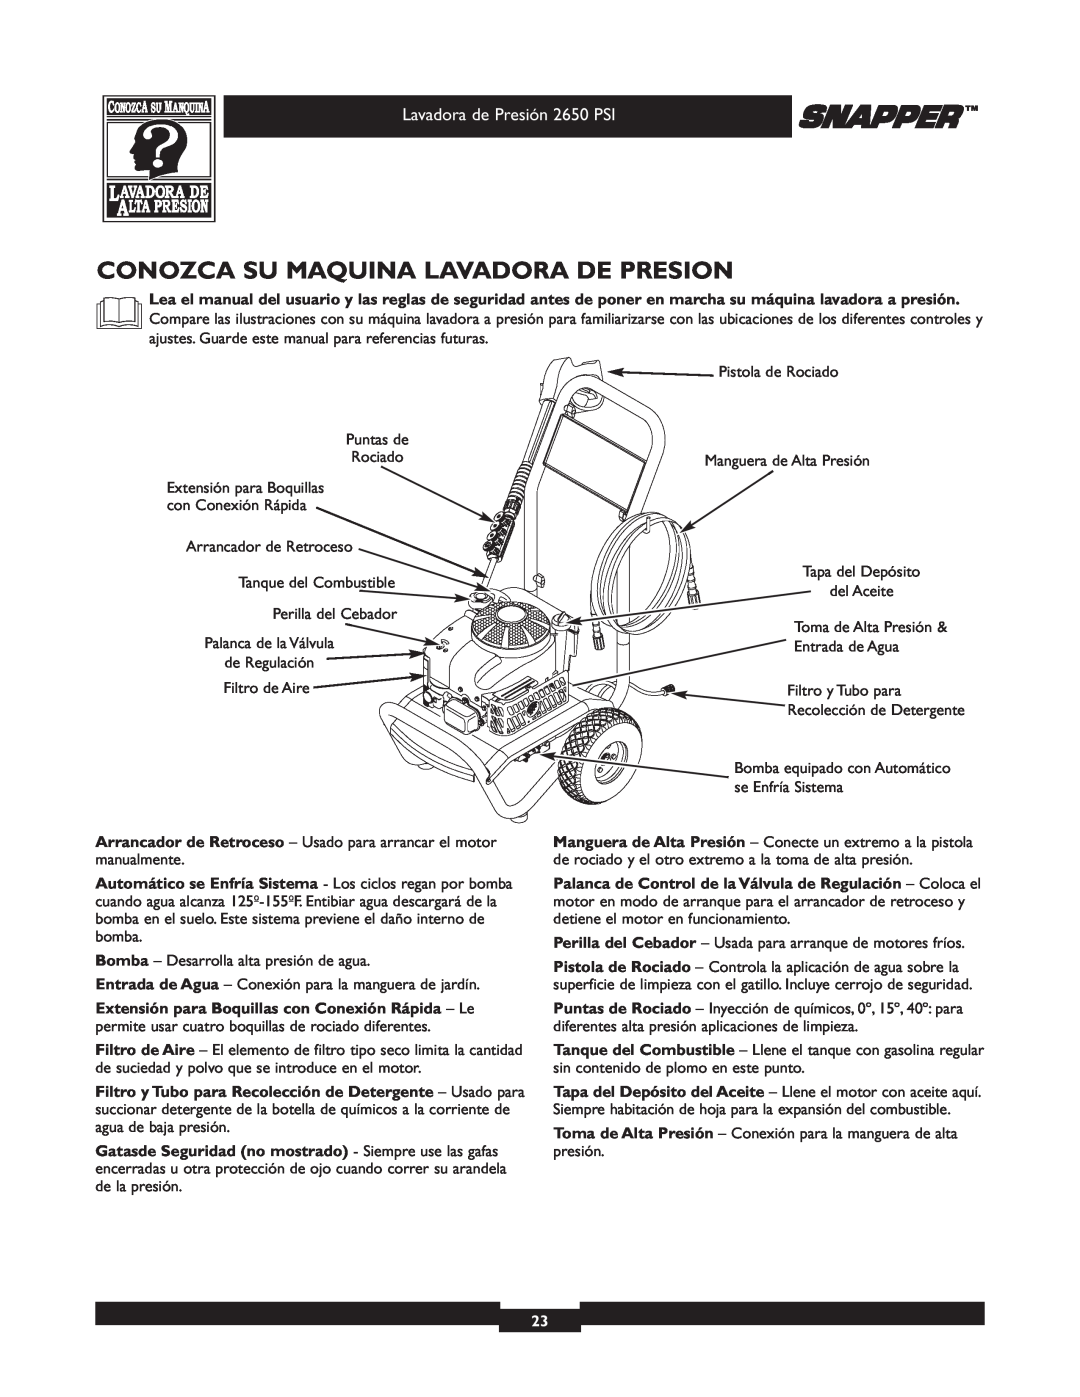 Snapper 020230 user manual Conozca Su Maquina Lavadora De Presion 